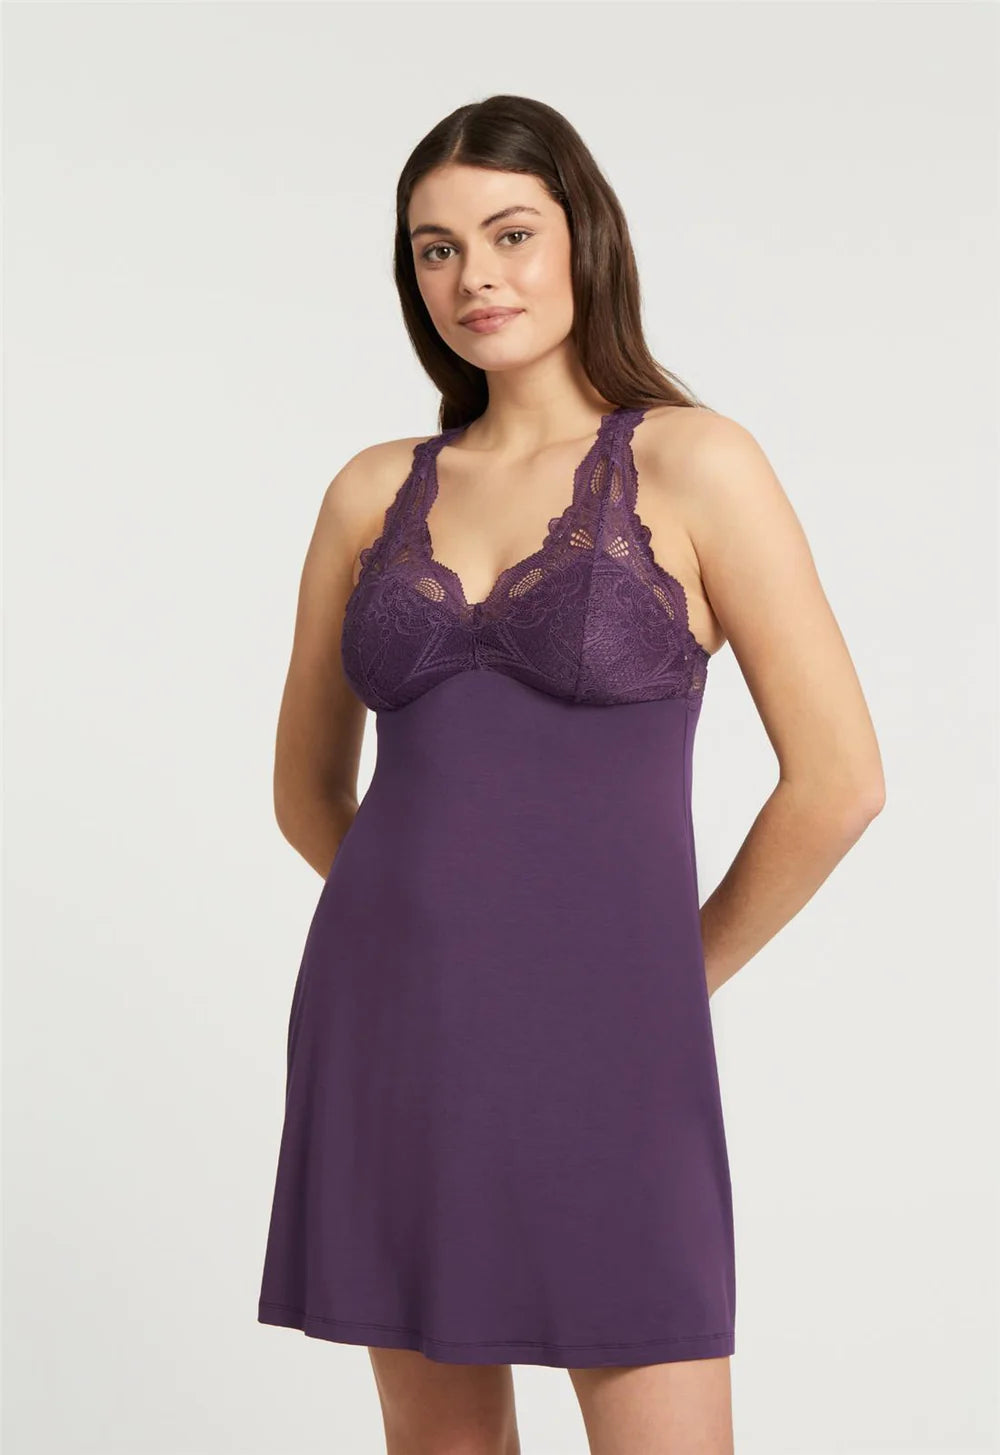 Belle Poque Full Length Slip Dress for Women Black Lace Slip Lingerie  Sleepwear, S at  Women's Clothing store